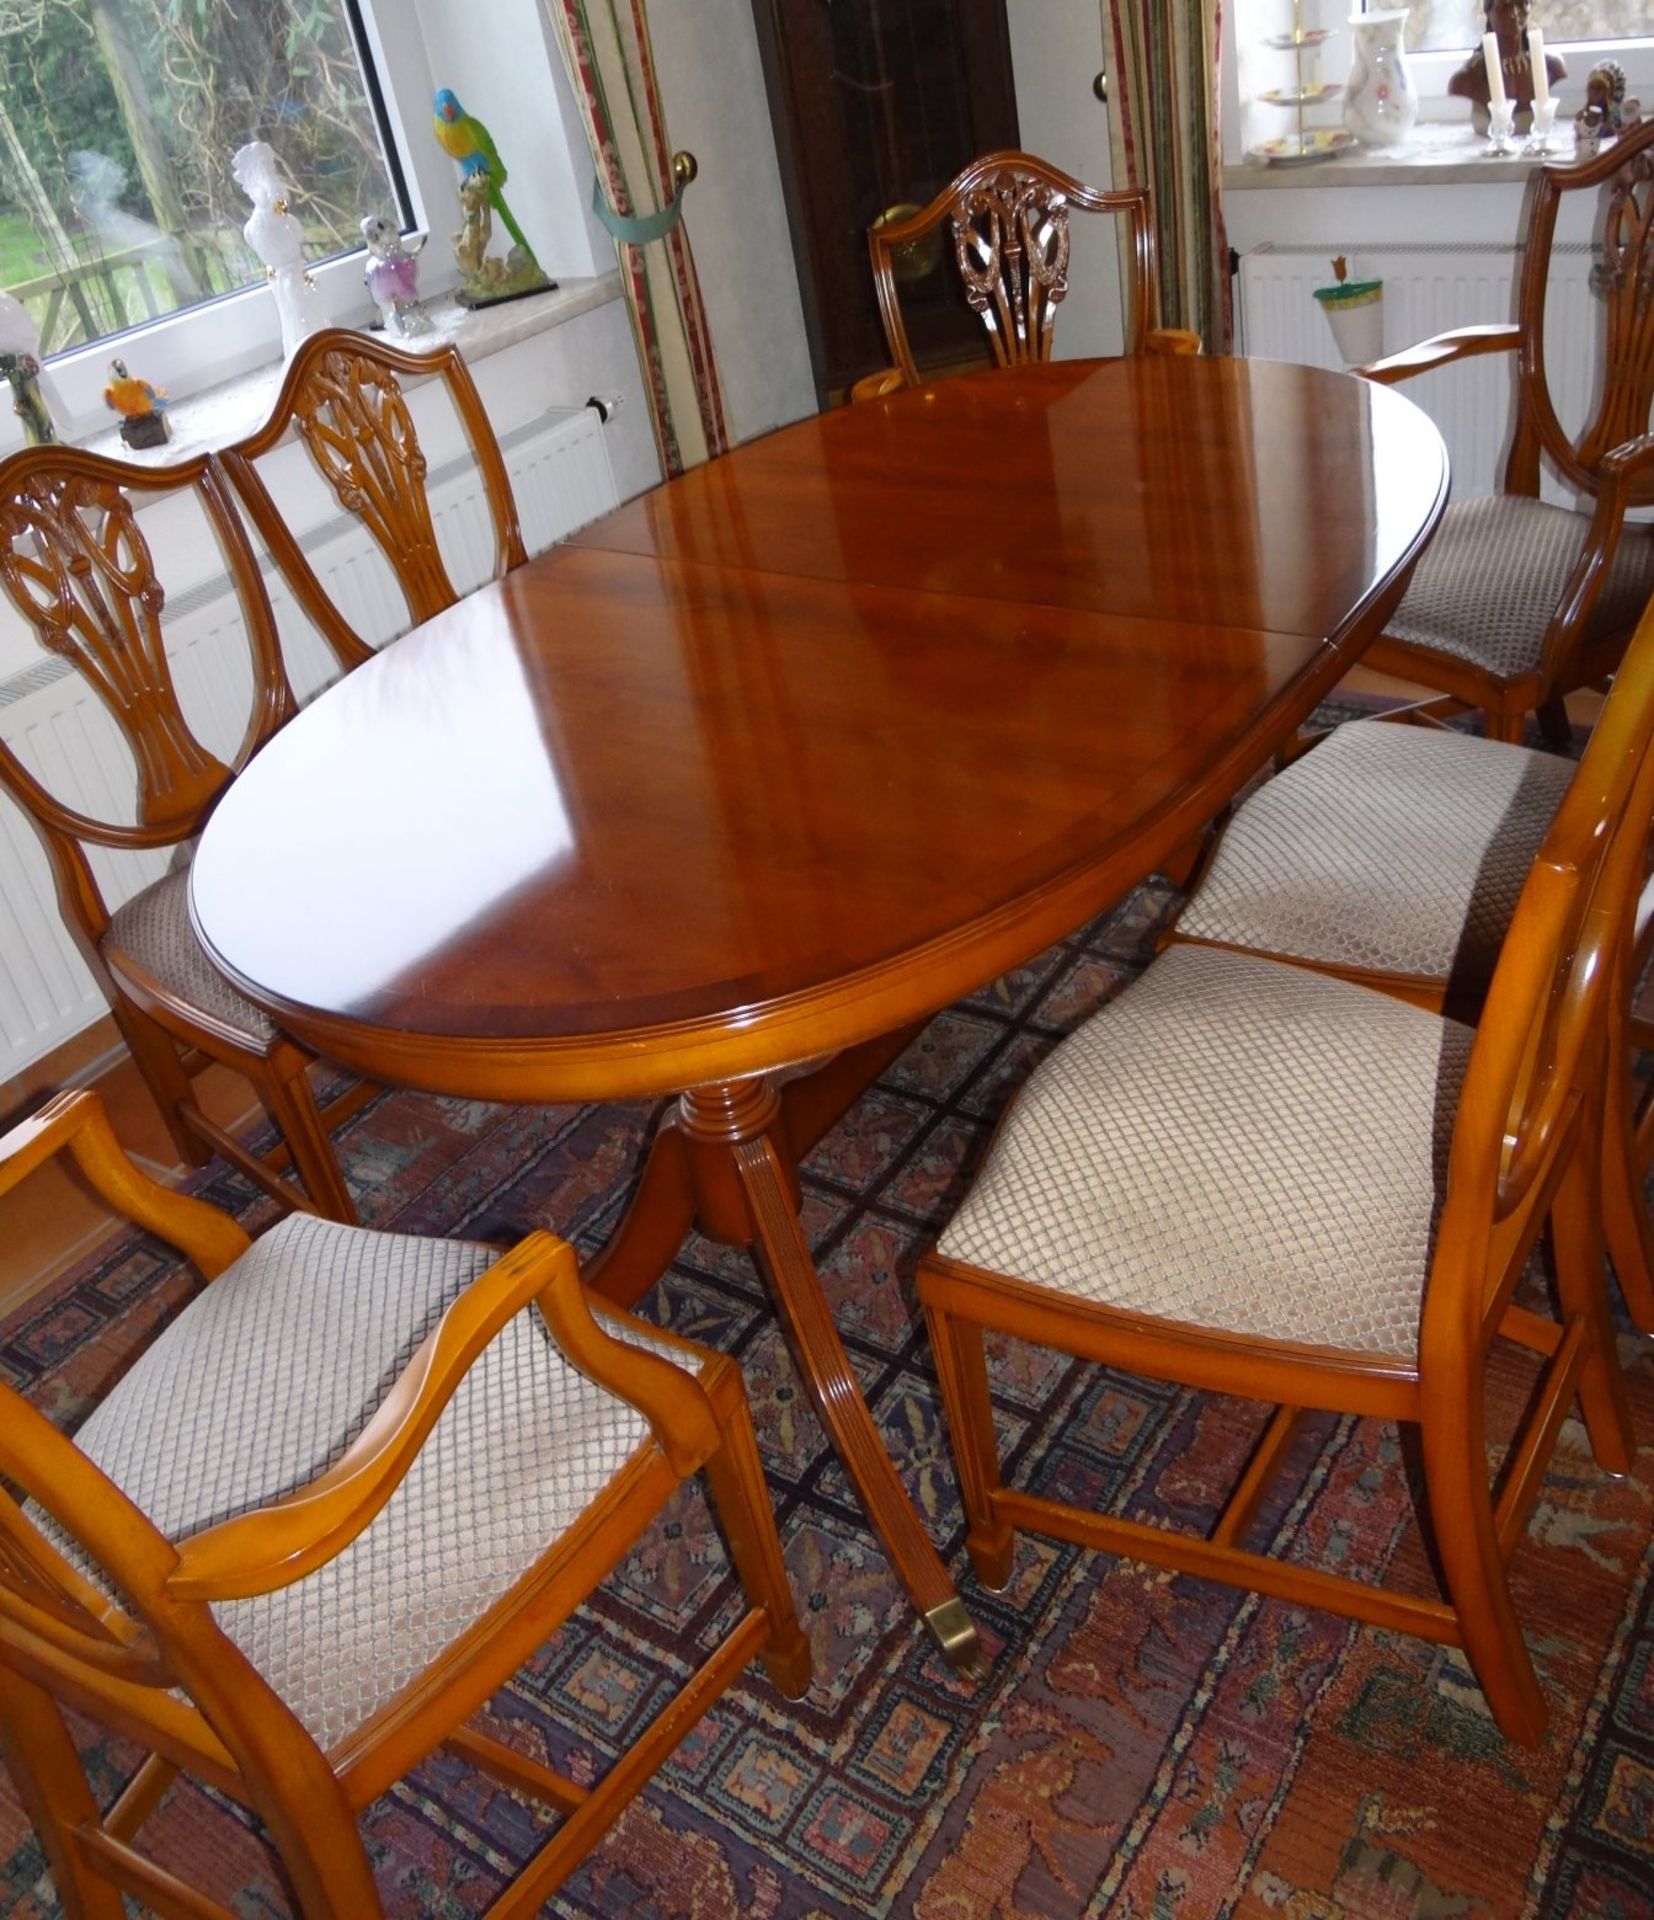 Esstisch mit 7 Stühlen im Sheraton-Stil, Kirsche, 3 Armlehnstühle, 4 Stühle, Tisch ausziehbar,